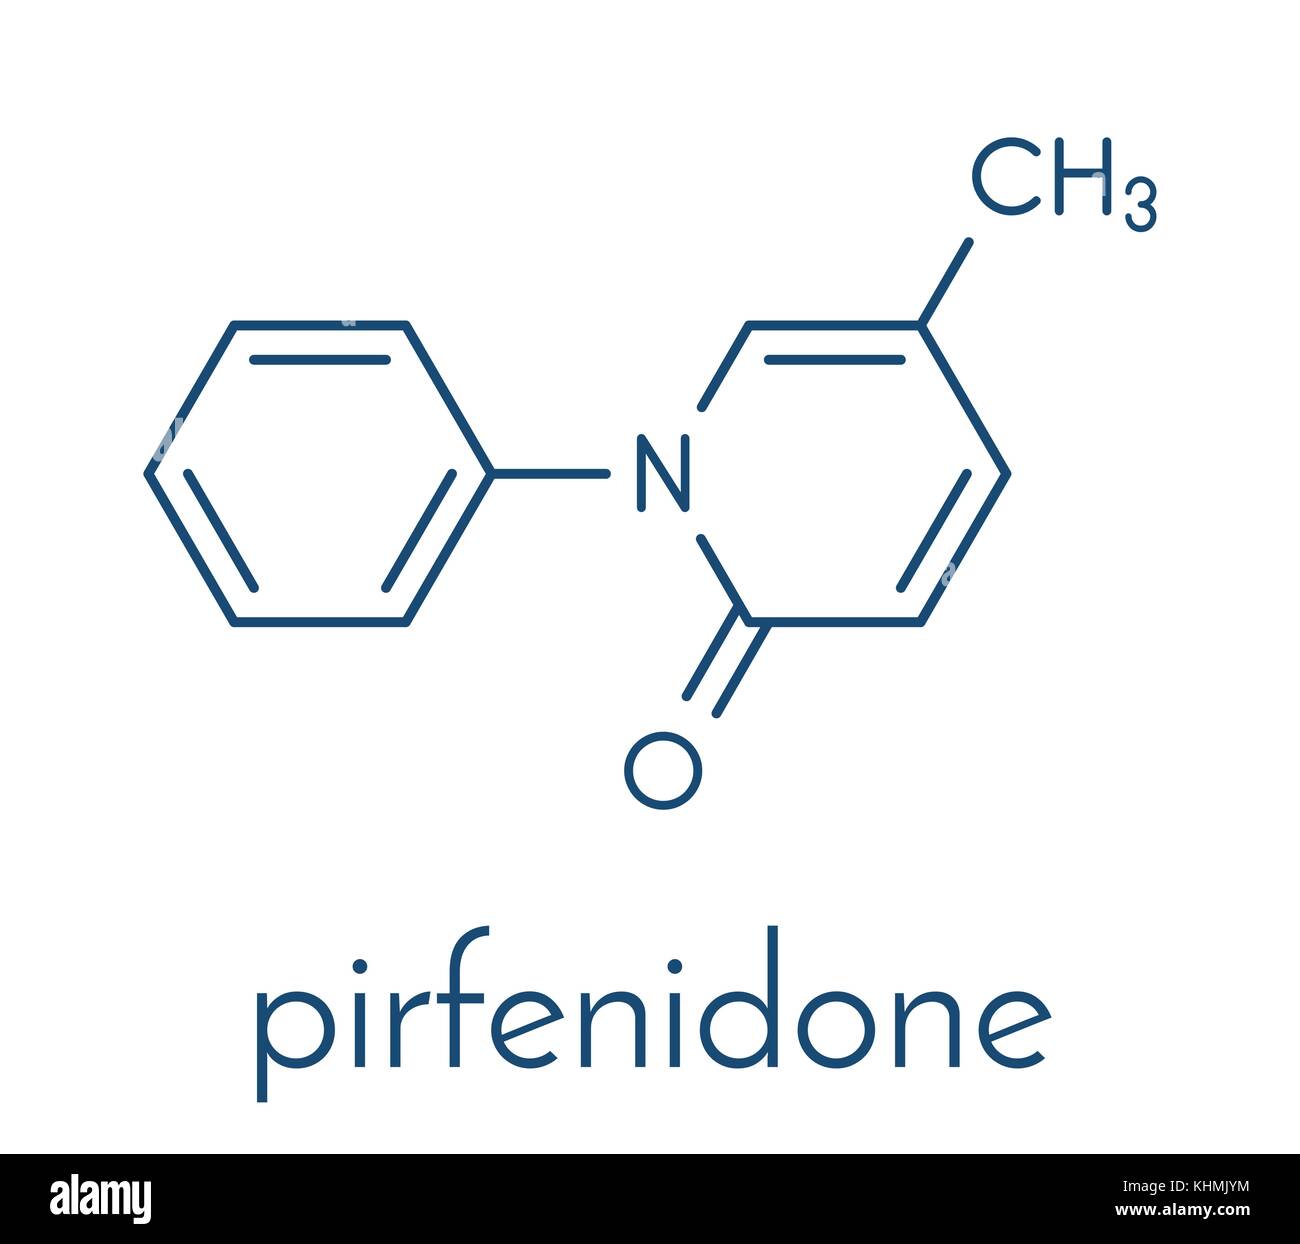 Pirfenidone idiopathische Lungenfibrose (IPF) Droge Molekül. ipf ist eine seltene Lungenerkrankung. Skelettmuskulatur Formel. Stock Vektor